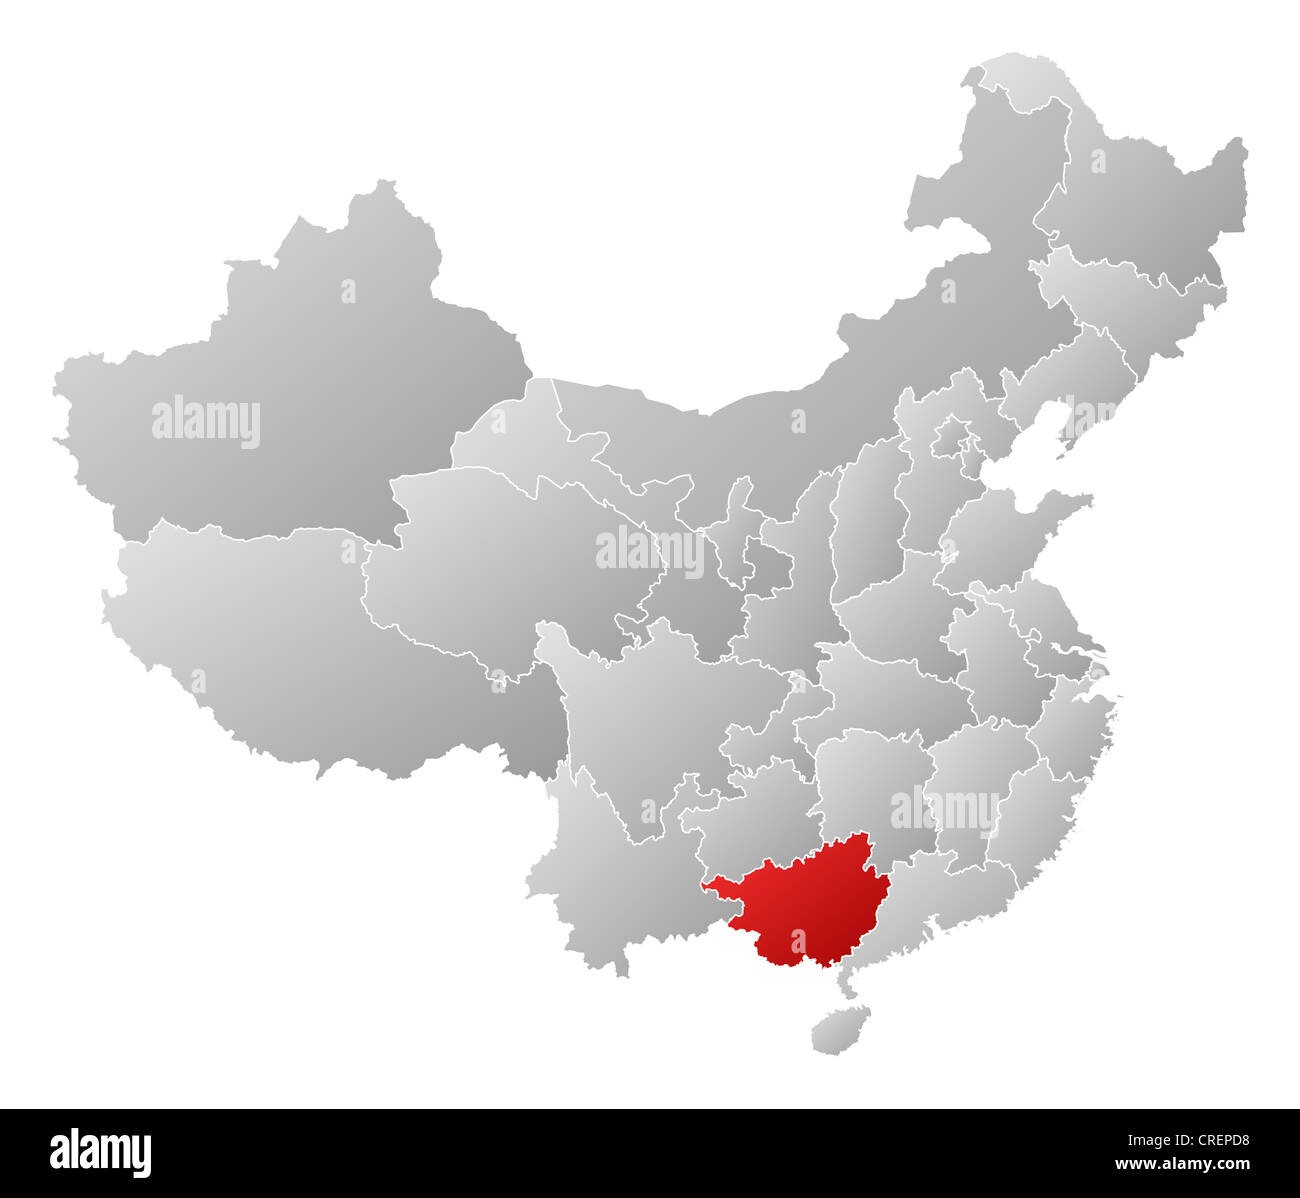 Politische Landkarte von China mit den verschiedenen Provinzen Guangxi wo markiert ist. Stockfoto